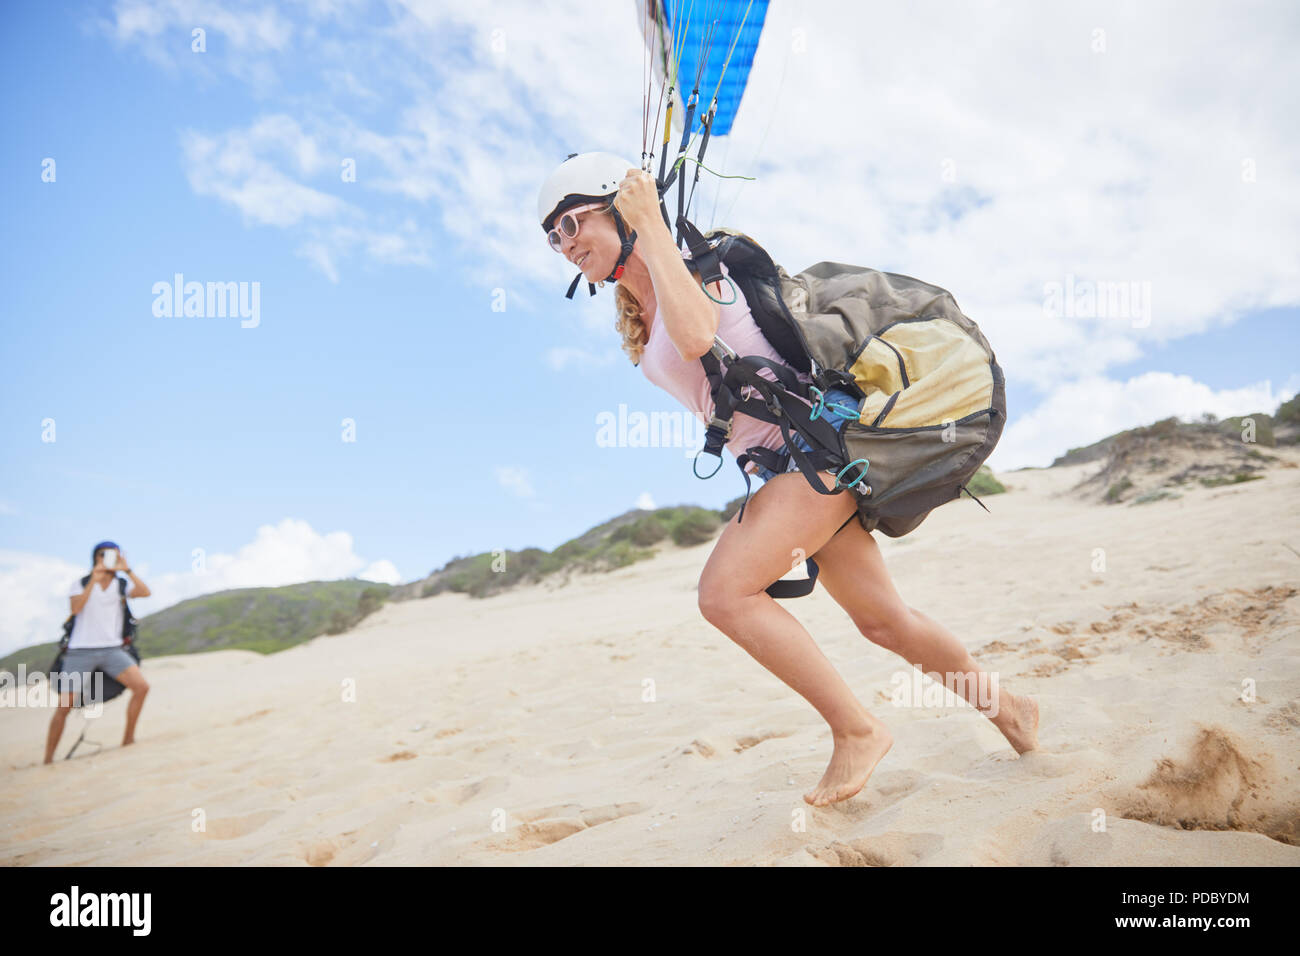 Parapente, course féminine de décoller sur beach Banque D'Images